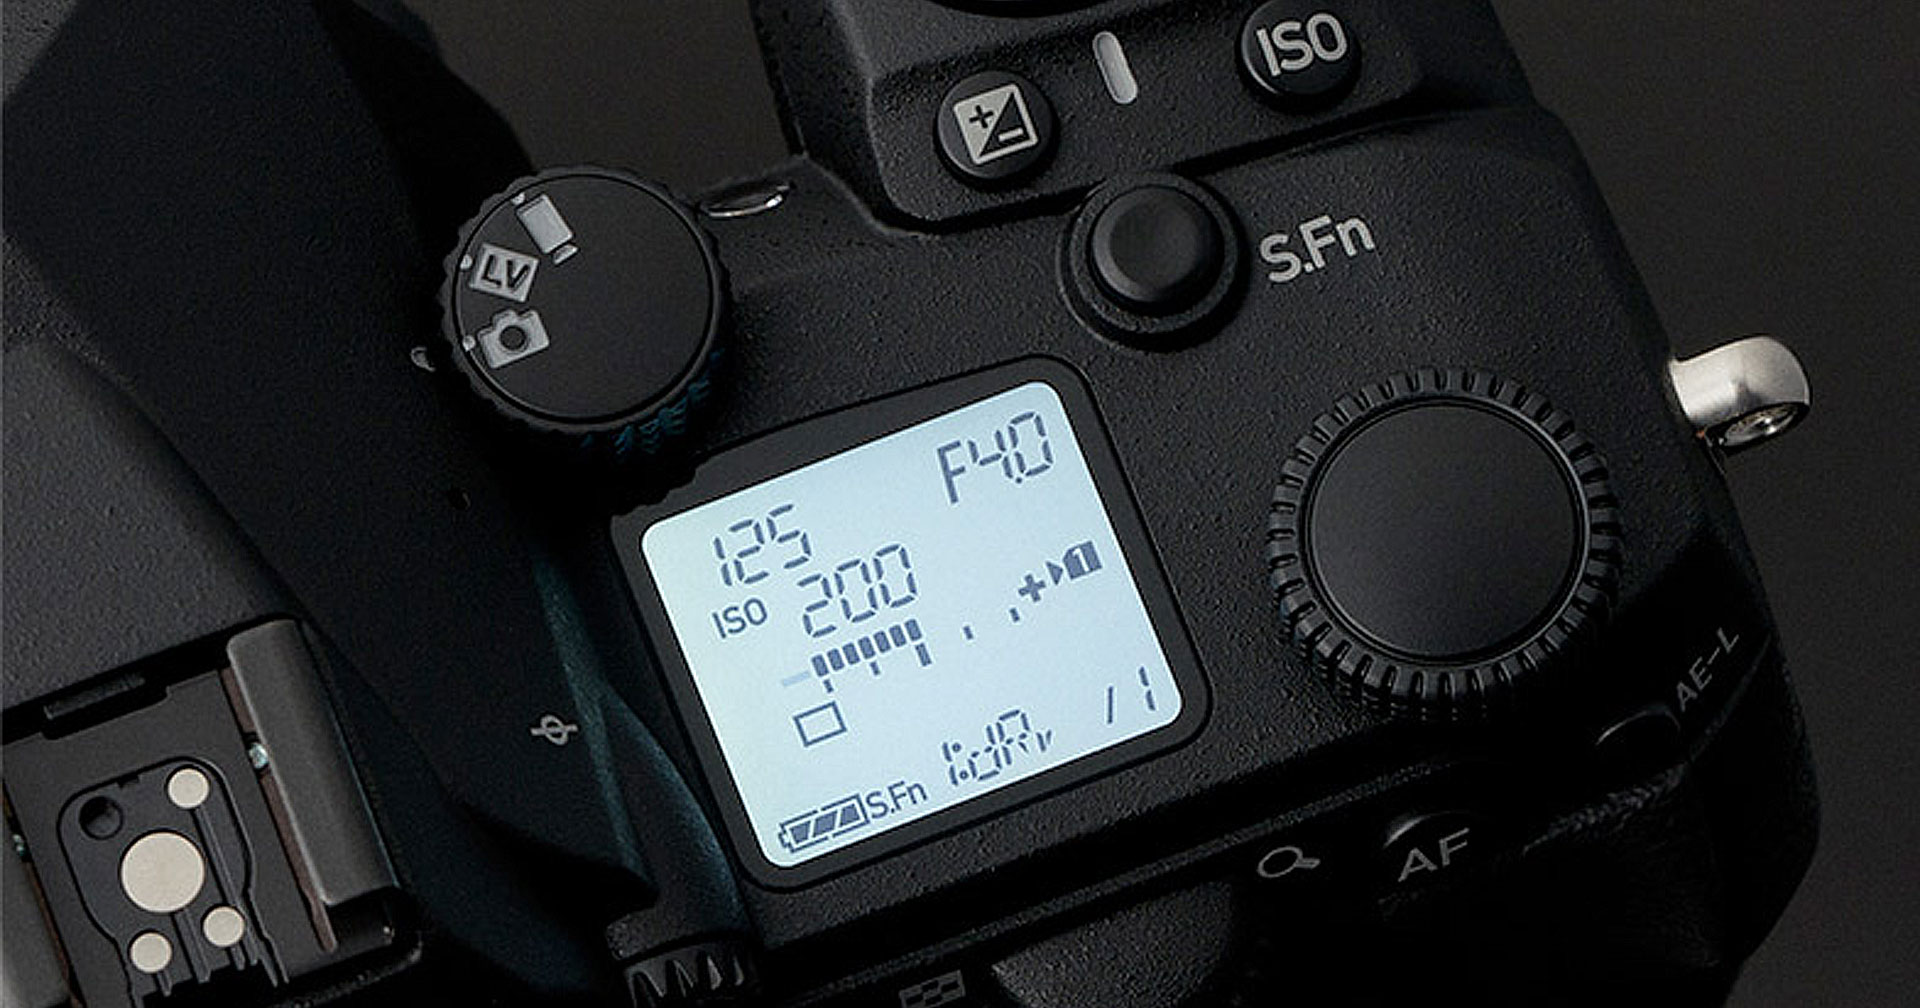 หลุดภาพ Pentax K-3 III Monochrome กล้อง DSLR รุ่นพิเศษ ถ่ายได้เฉพาะภาพขาวดำเท่านั้น!